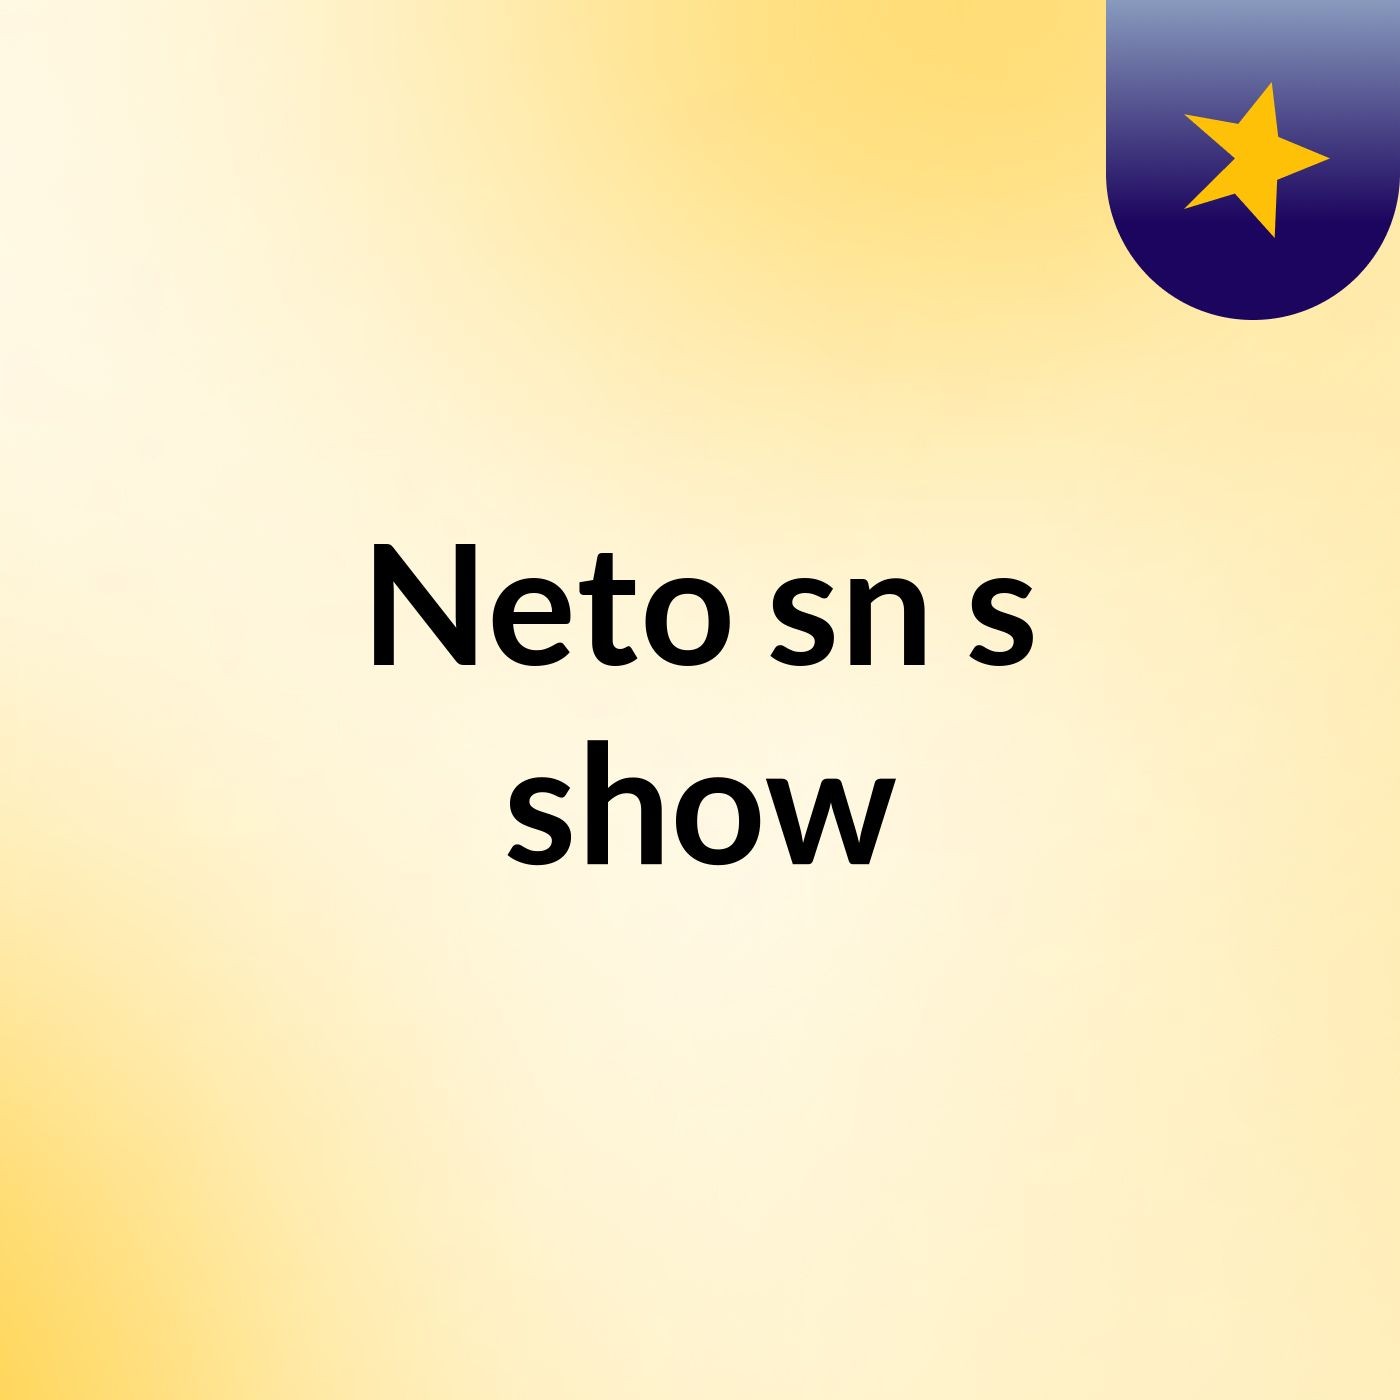 Neto sn's show